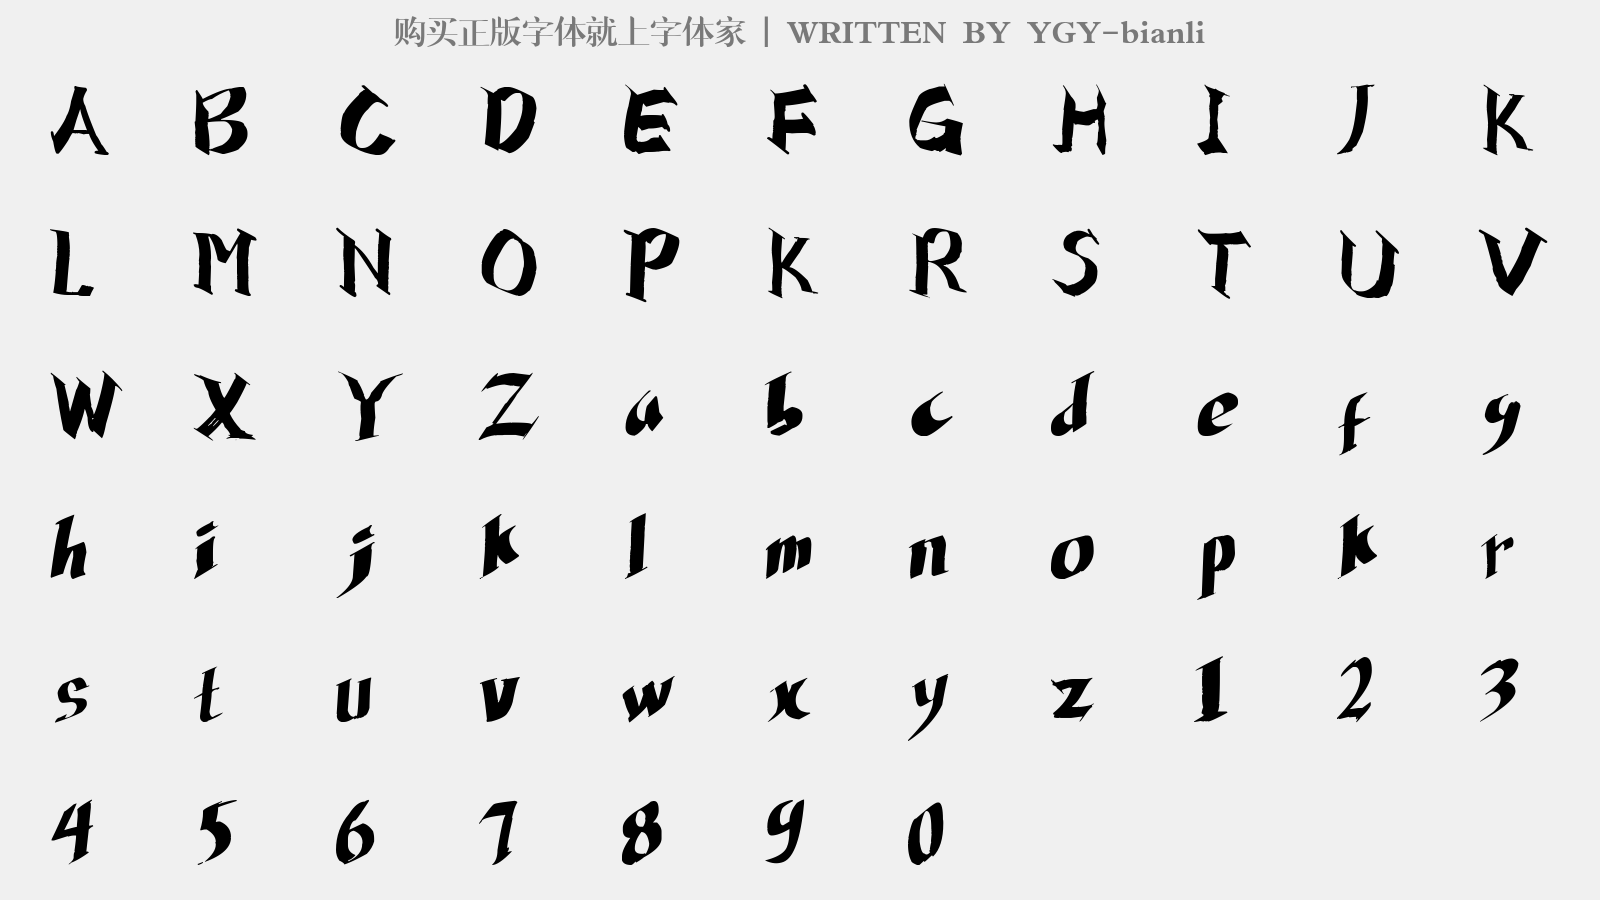 YGY-bianli - 大写字母/小写字母/数字